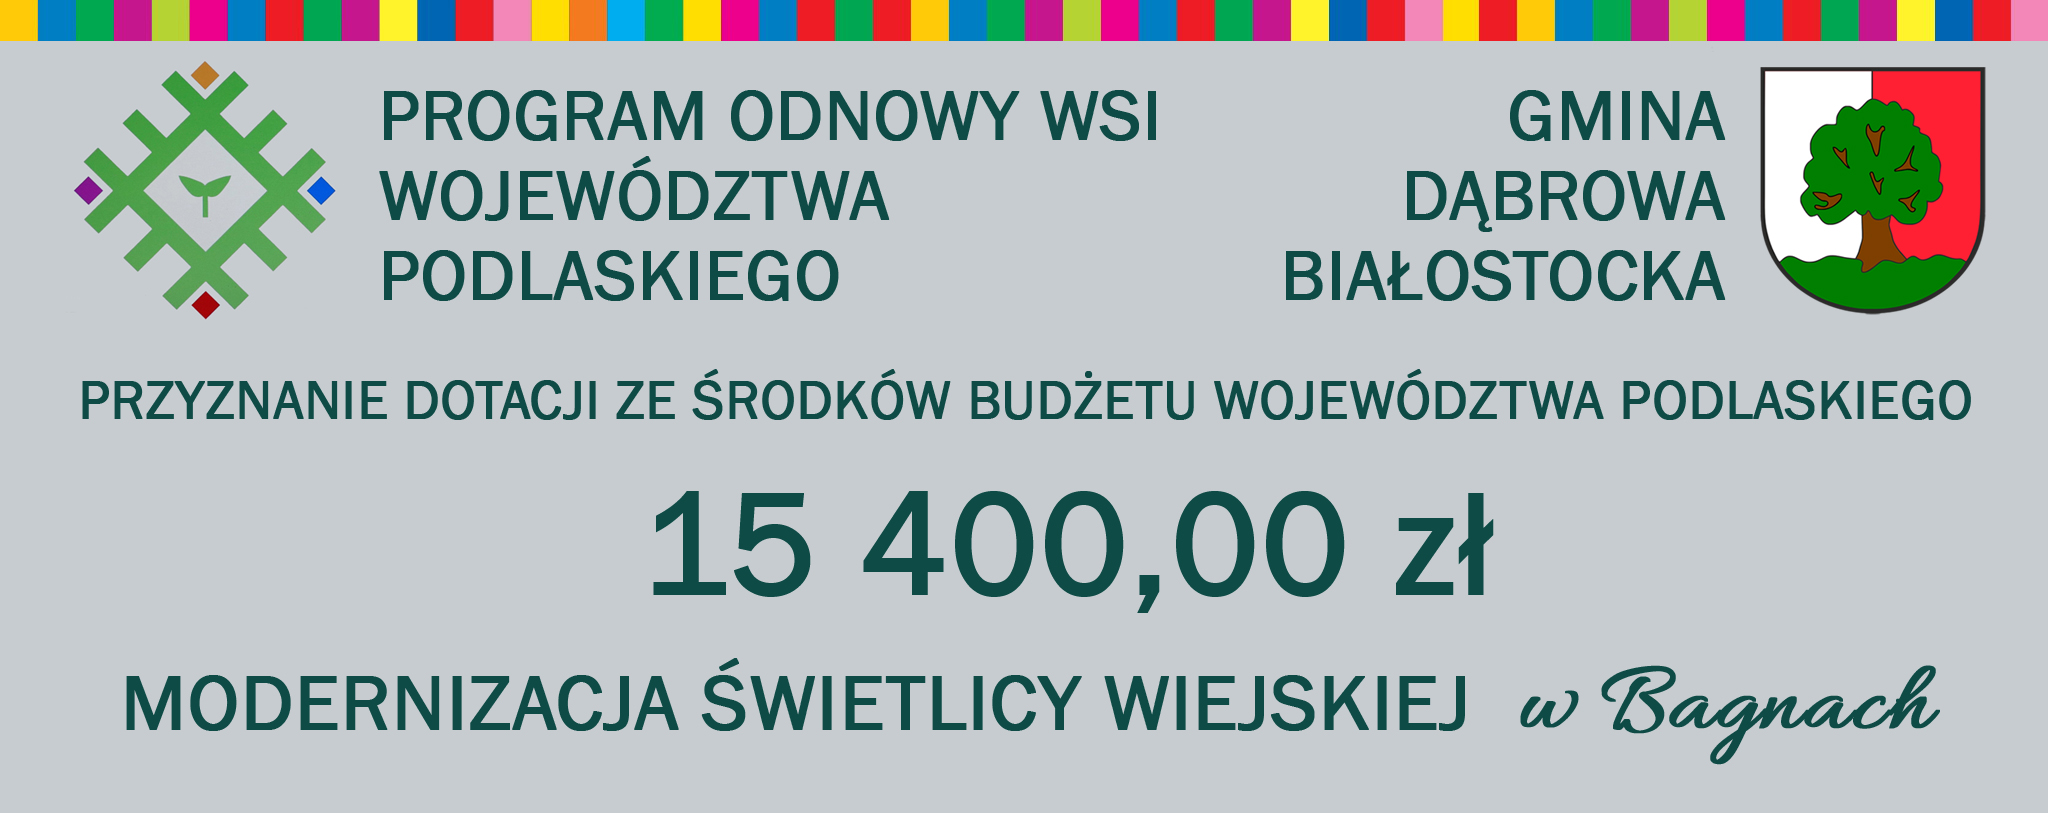 herb dąbrowy białostockiej, logo Program Odnowy Wsi Województwa Podlaskiego